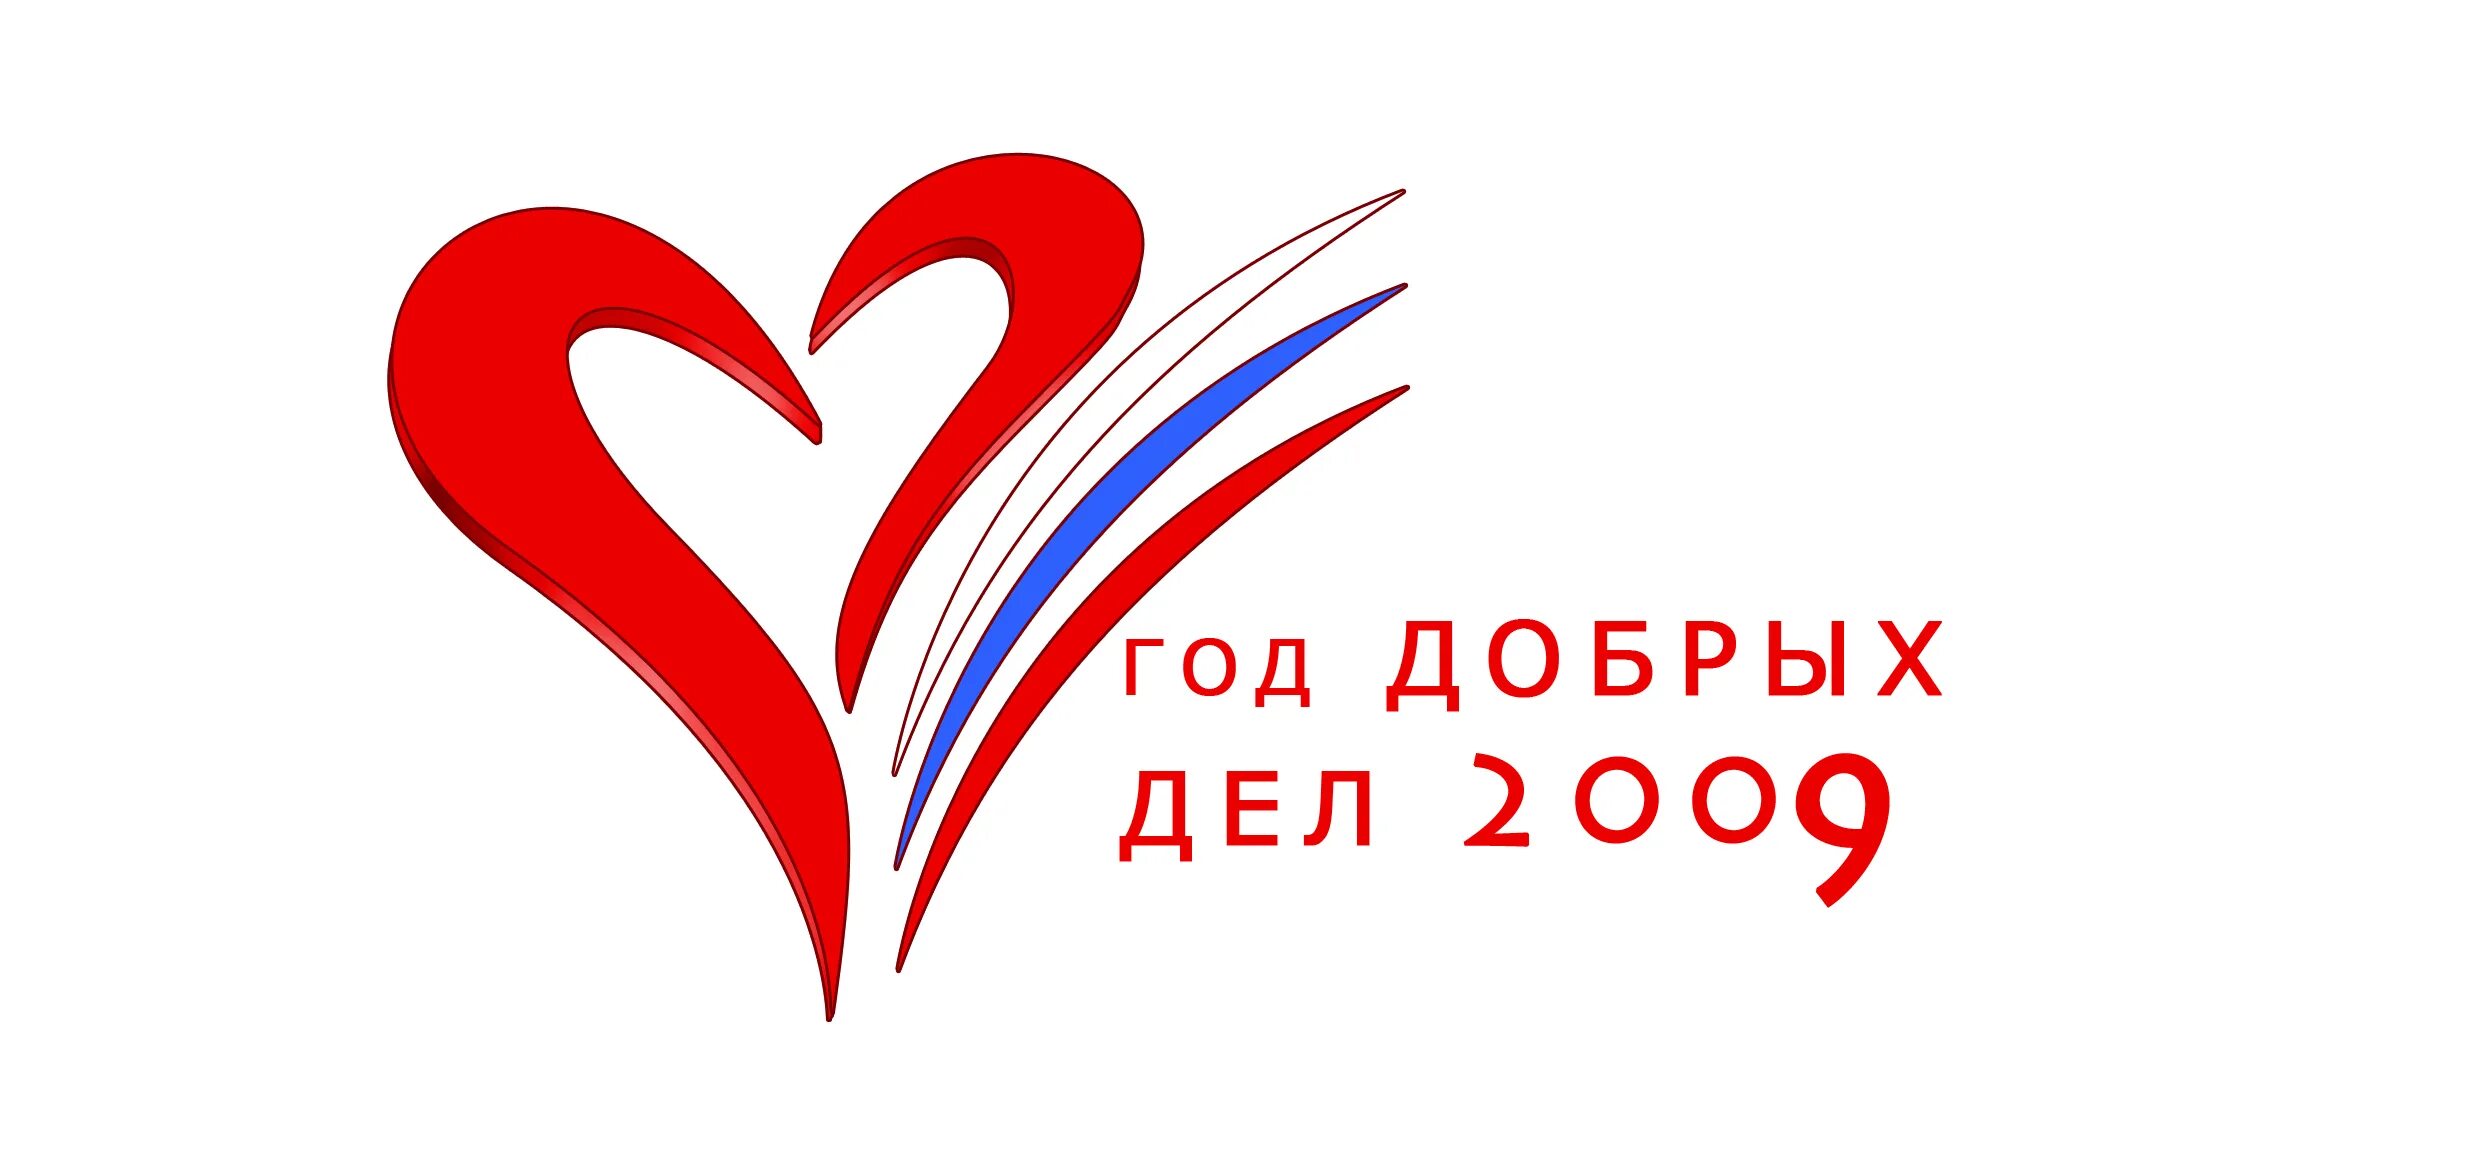 Акция добро в движении движение первых. Эмблема волонтеров. Логотипы волонтерских организаций. Символ волонтерского движения в России. Символ волонтерского отряда.